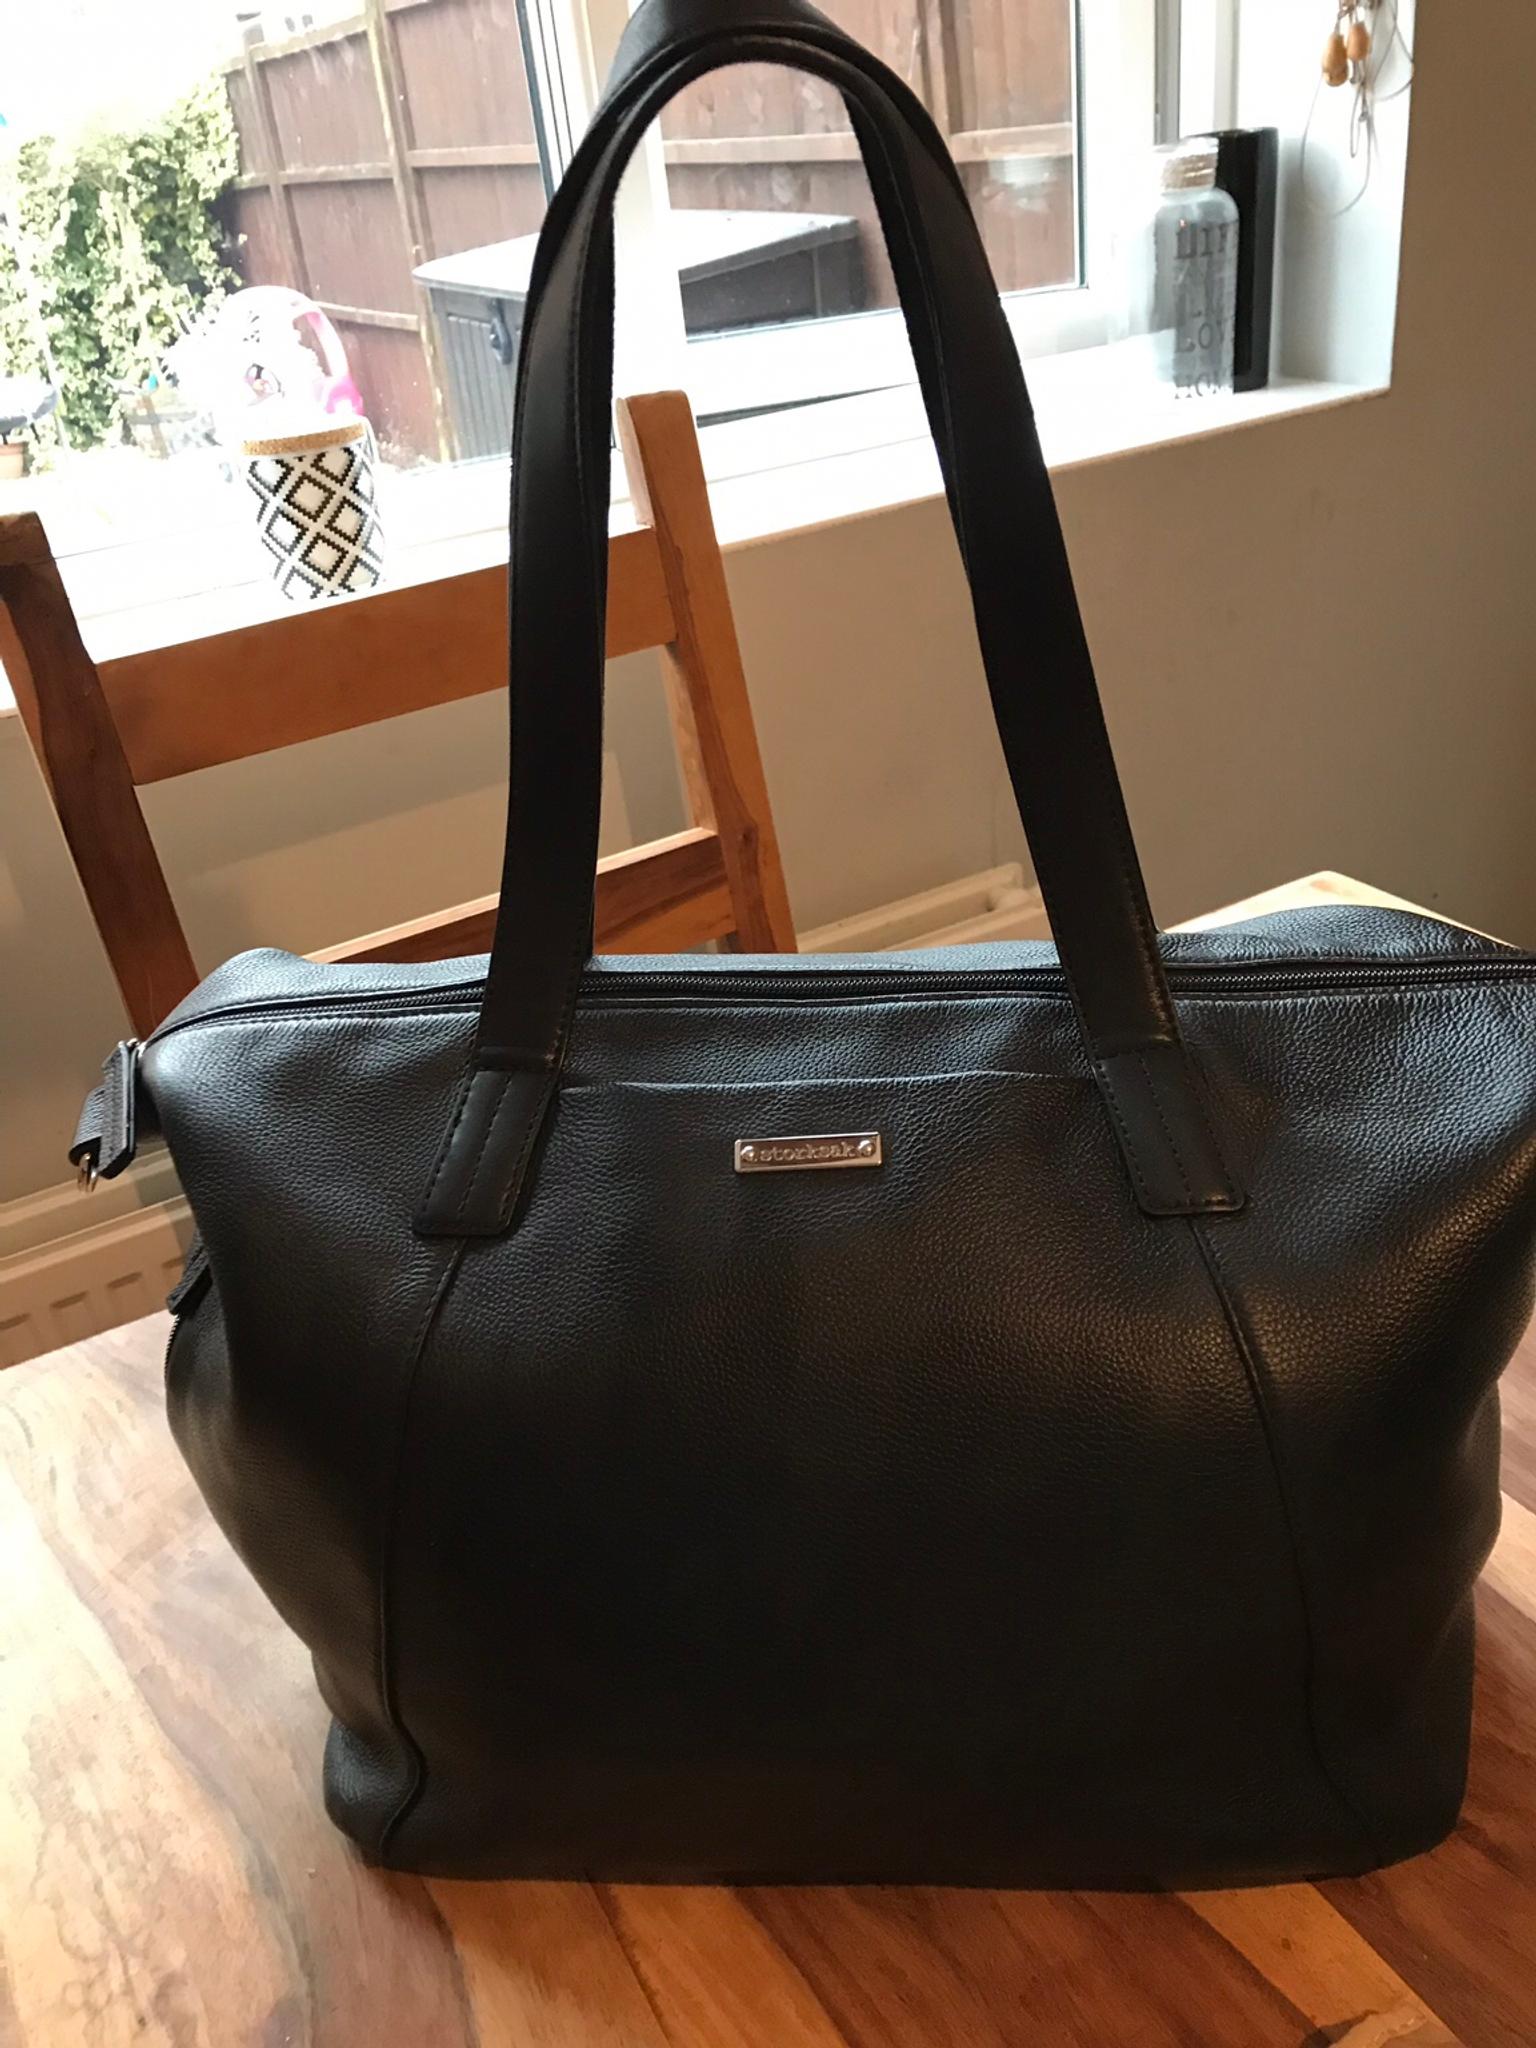 storksak leather changing bag